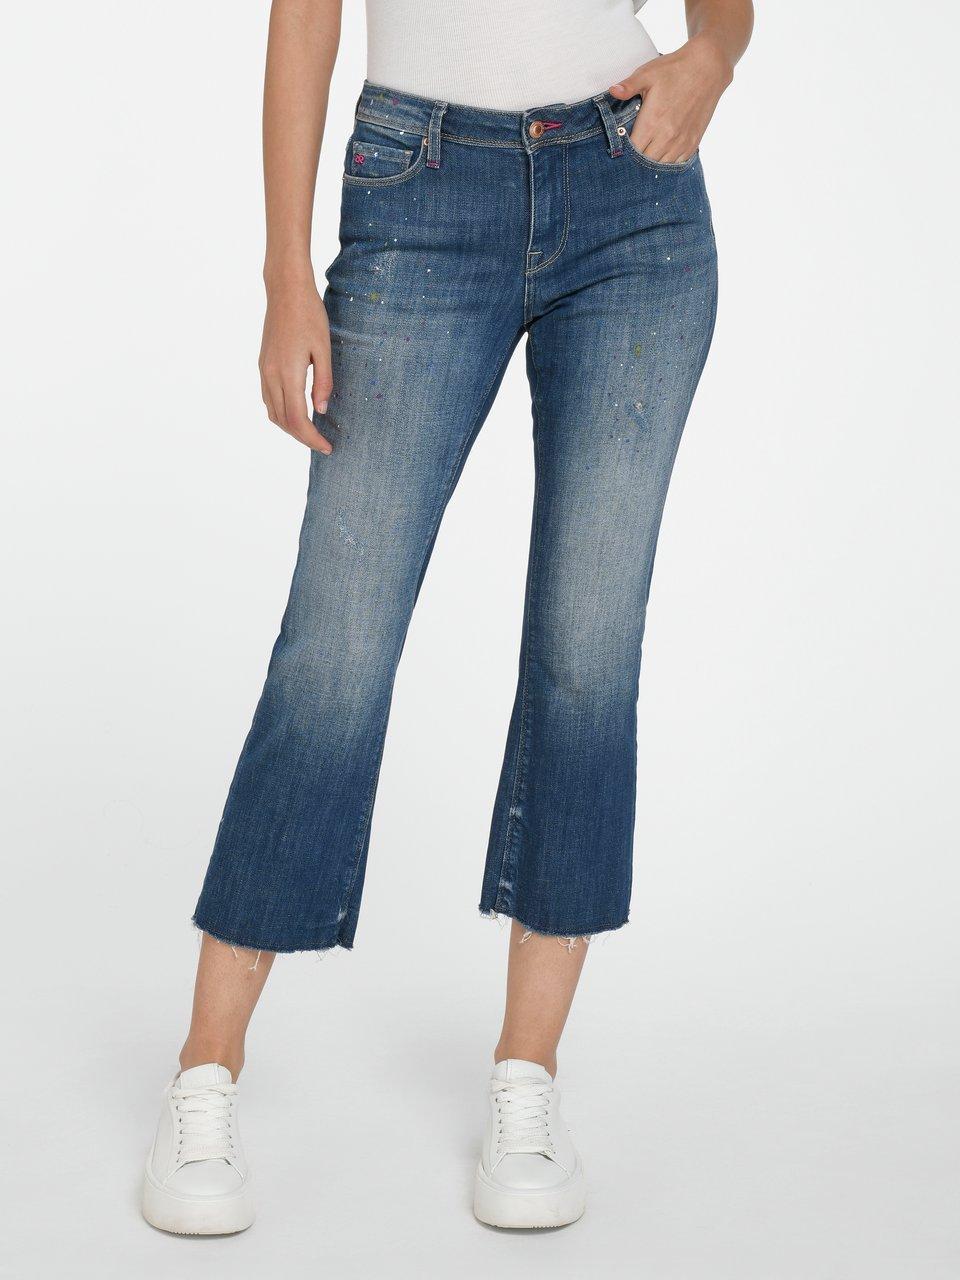 Raffaello Rossi - 7/8-jeans model Vic Dots